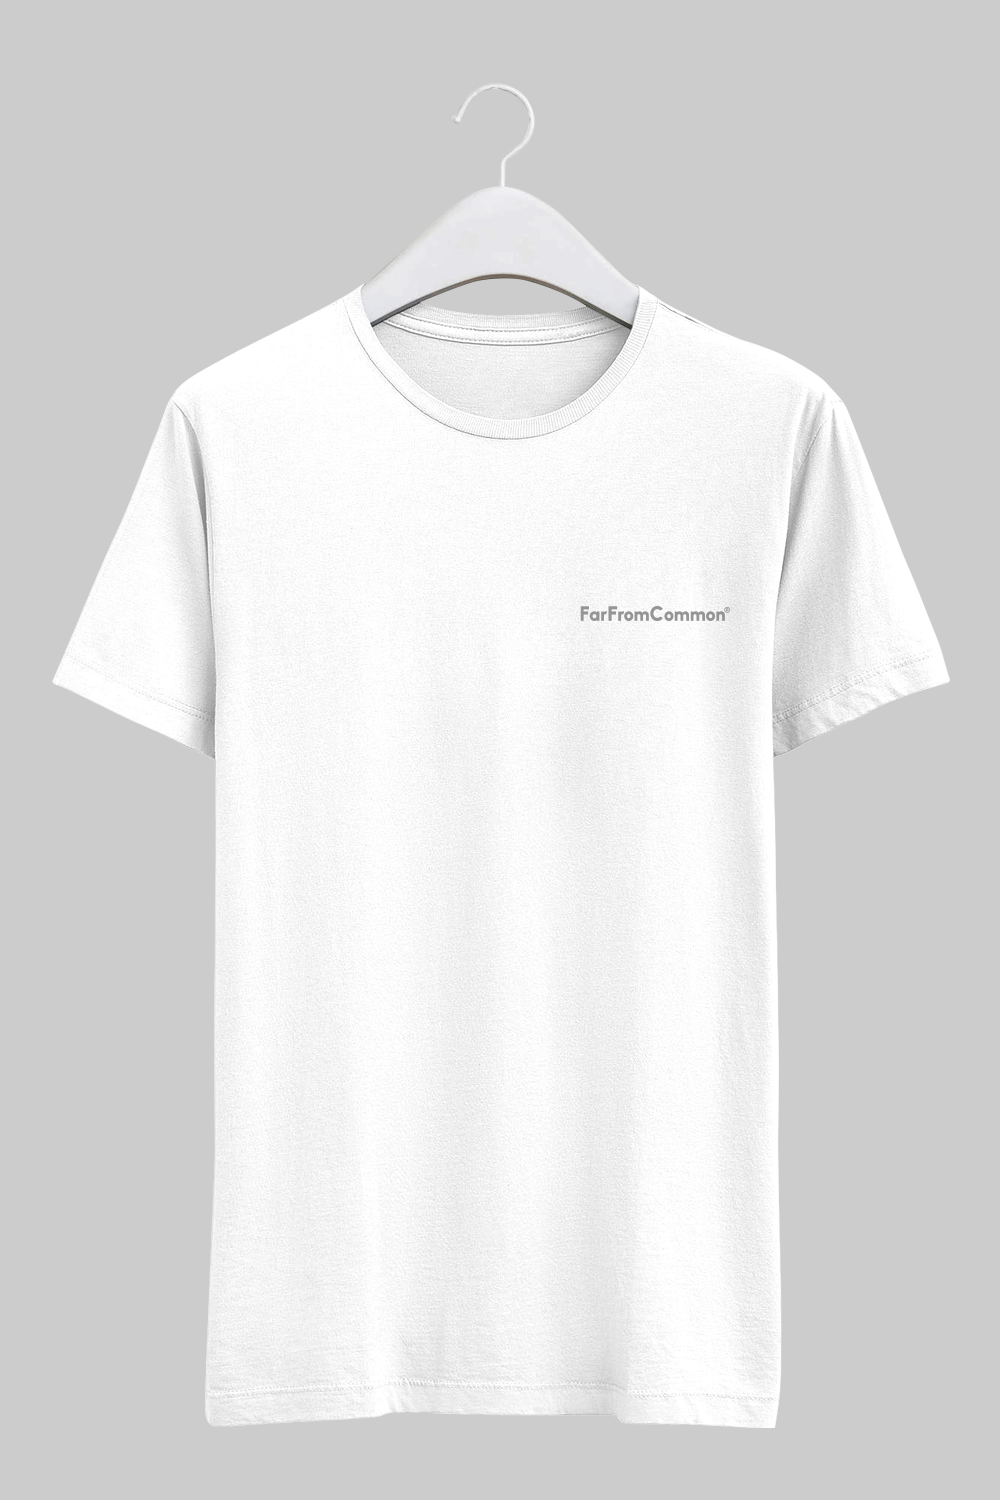 Unisex Basics T-shirt White